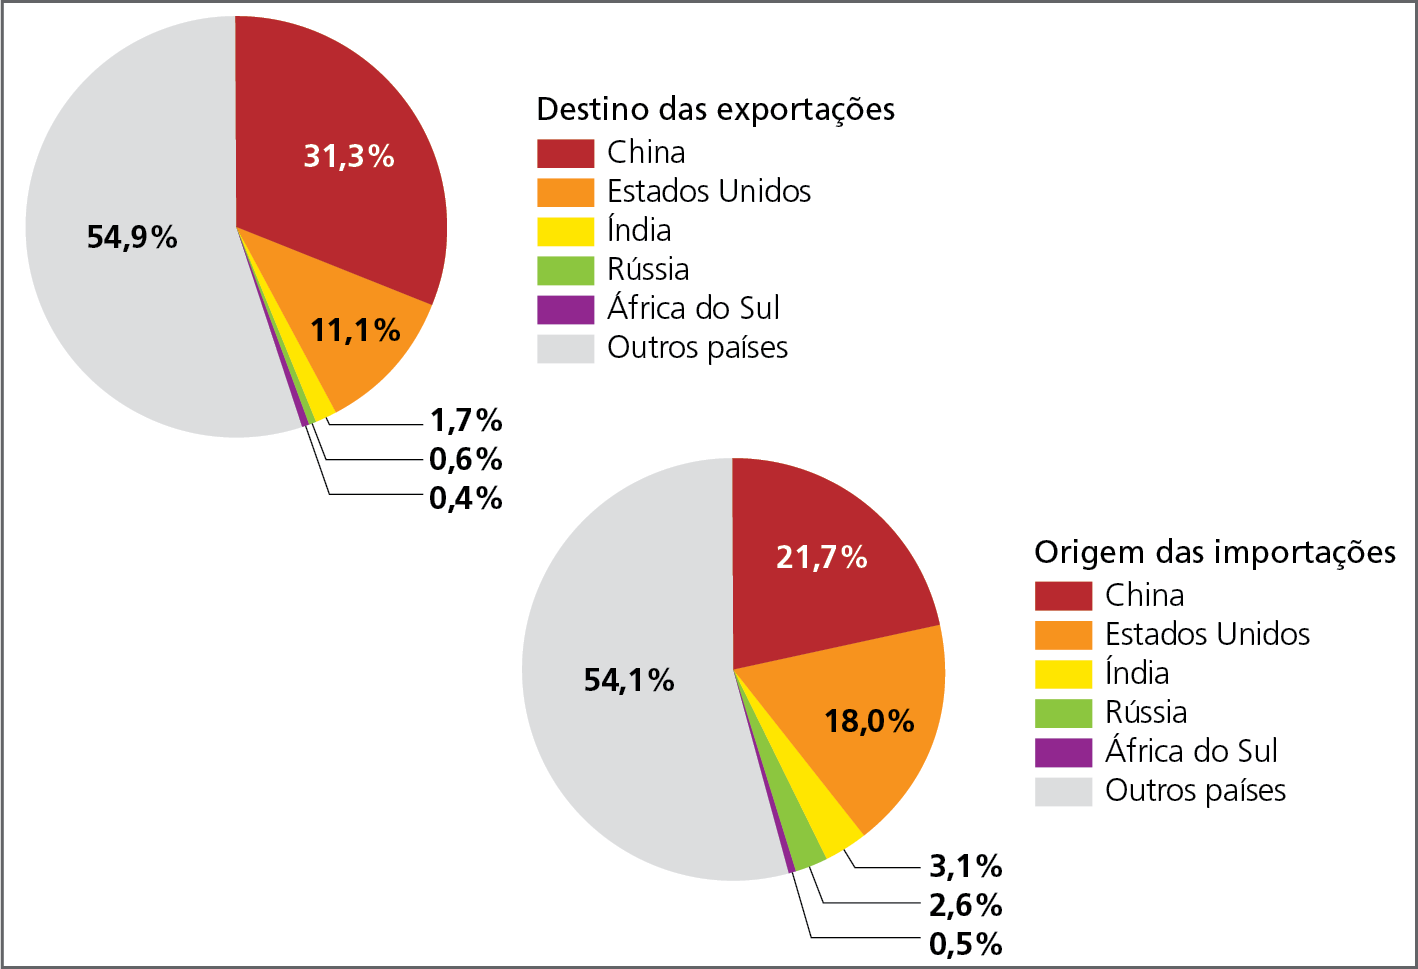 Gráfico. Brasil: trocas comerciais, em porcentagem do valor comercializado, 2021.  Dois gráficos circulares: o primeiro representa o destino das exportações e o segundo a origem das importações. Os setores representam as porcentagens dos países. Destino das exportações: China: 31,3 por cento. Estados Unidos: 11,1 por cento. Índia: 1,7 por cento. Rússia: 0,6 por cento. África do Sul: 0,4 por cento. Outros países: 54,9  por cento.  Origem das importações: China: 21,7 por cento. Estados Unidos: 18,0 por cento. Índia: 3,1 por cento. Rússia: 2,6 por cento . África do Sul: 0,5 por cento. Outros países: 54,1 por cento.